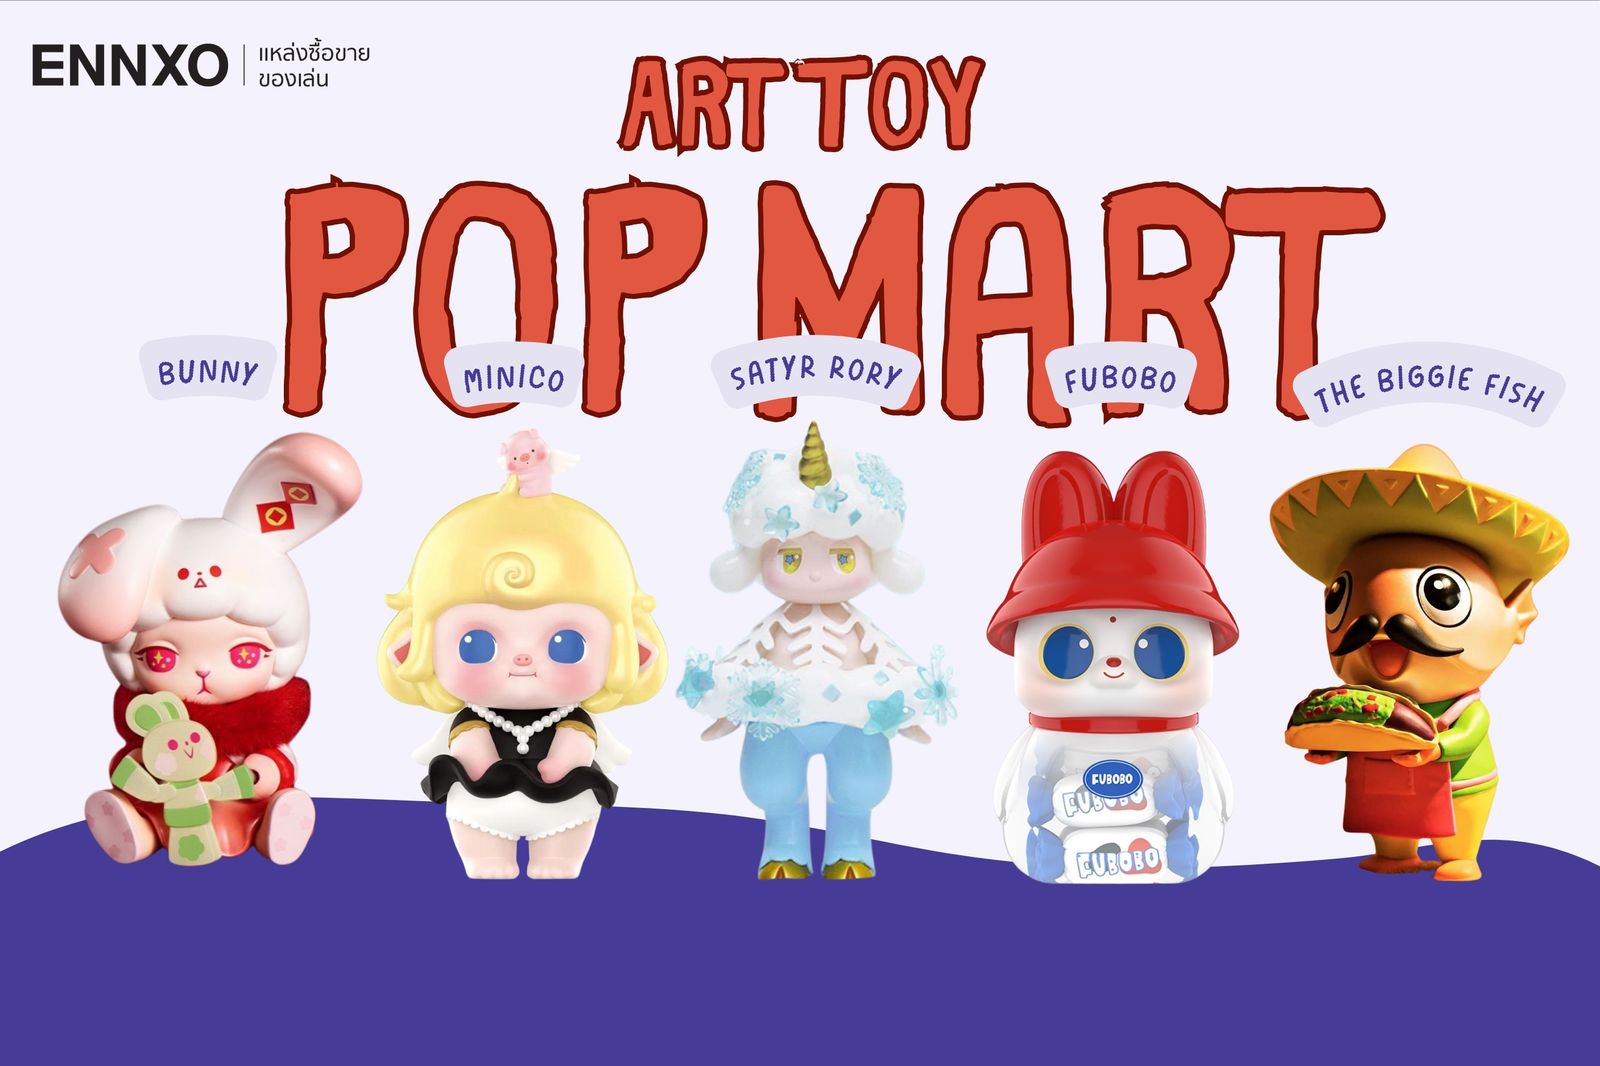 รวมอาร์ตทอย Pop Mart น่ารักๆ Bunny, Minico, Satyr Rory, Fubobo และ The Biggie Fish